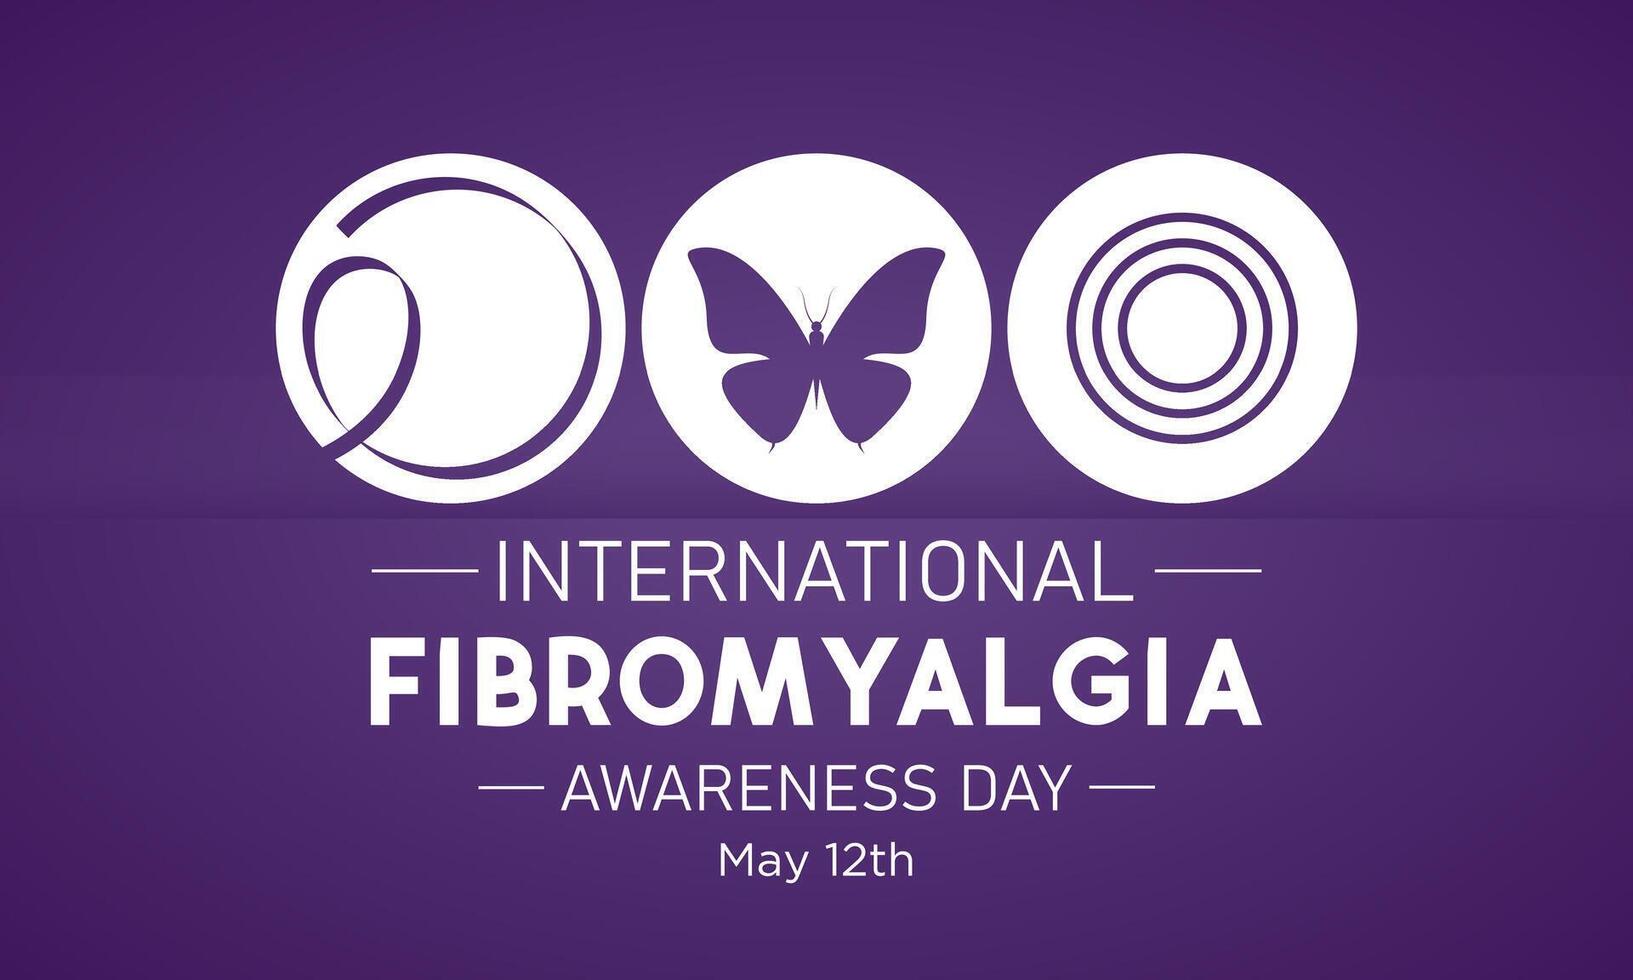 Internationale fibromyalgie bewustzijn dag, mei 12. vector illustratie Aan de thema van wereld fibromyalgie en chronisch vermoeidheid syndroom bewustzijn dag banier ontwerp.